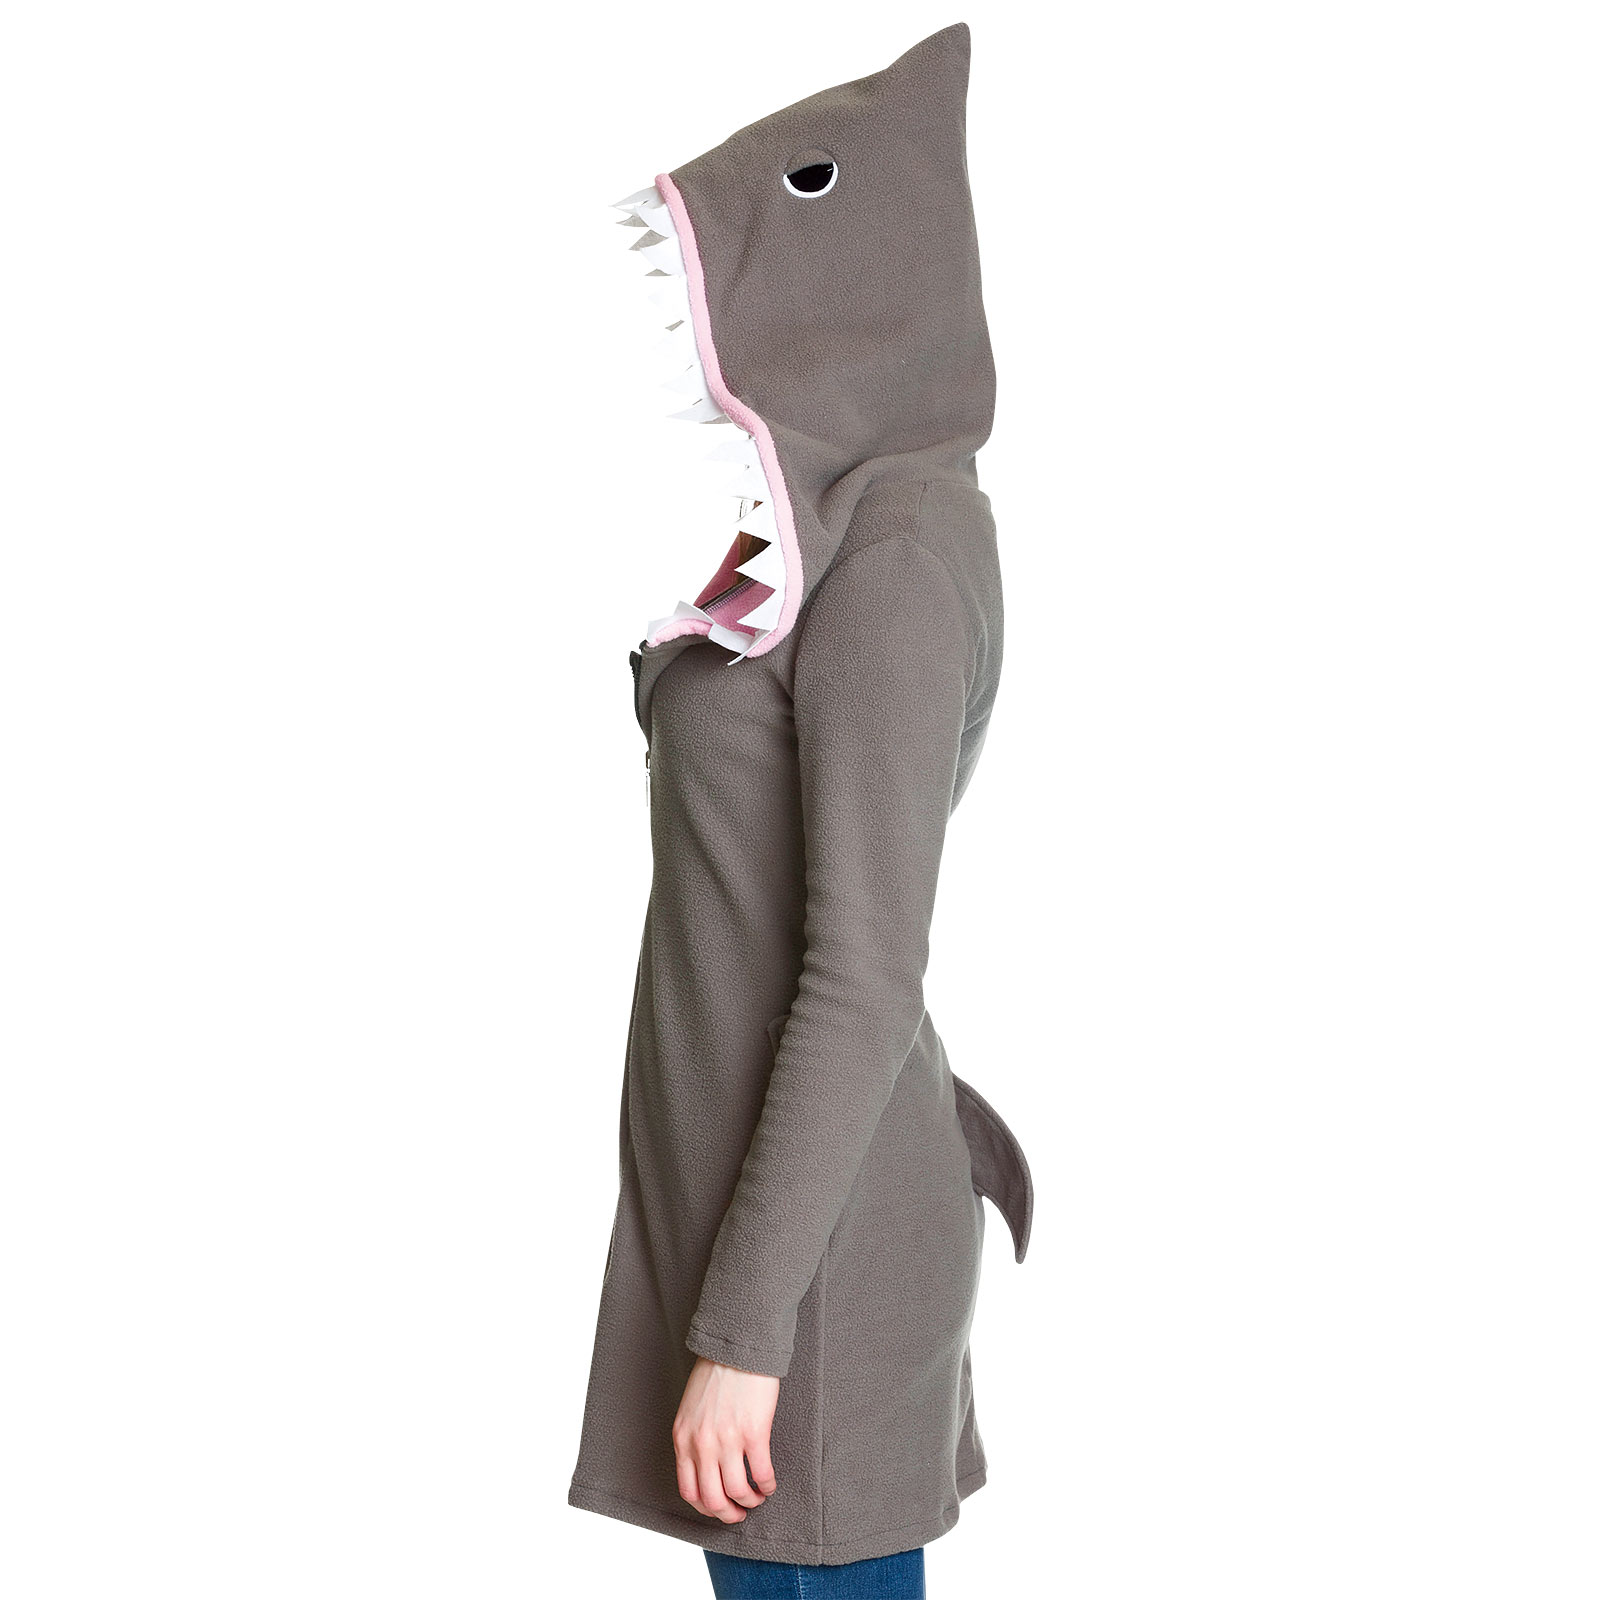 Sharky - Shark Costume for Women